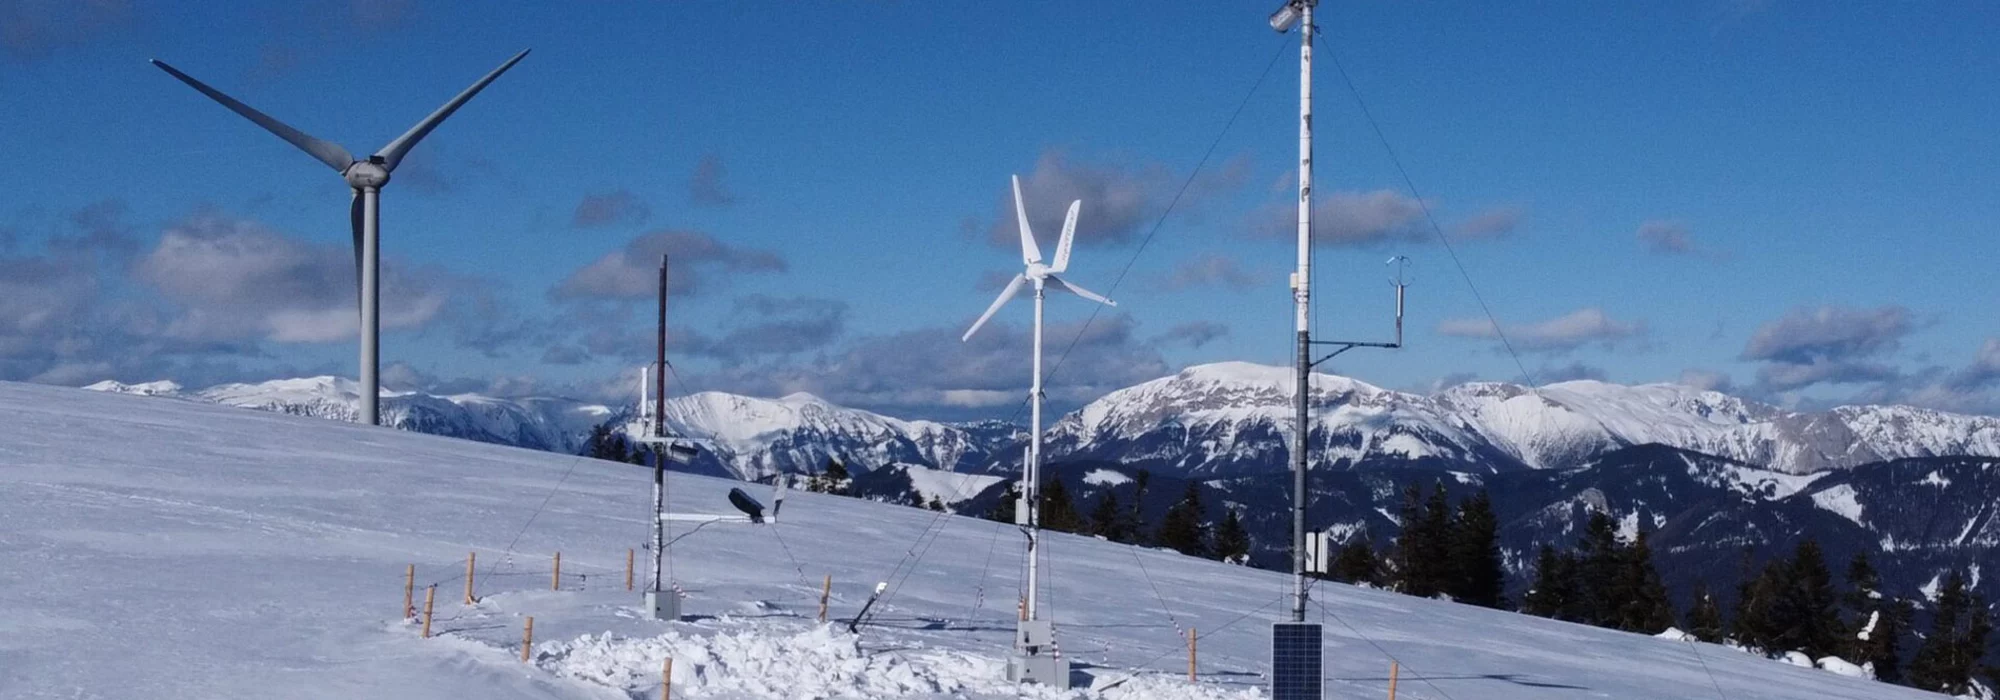 Durch Windkraft betriebene Wetterstation in den Alpen